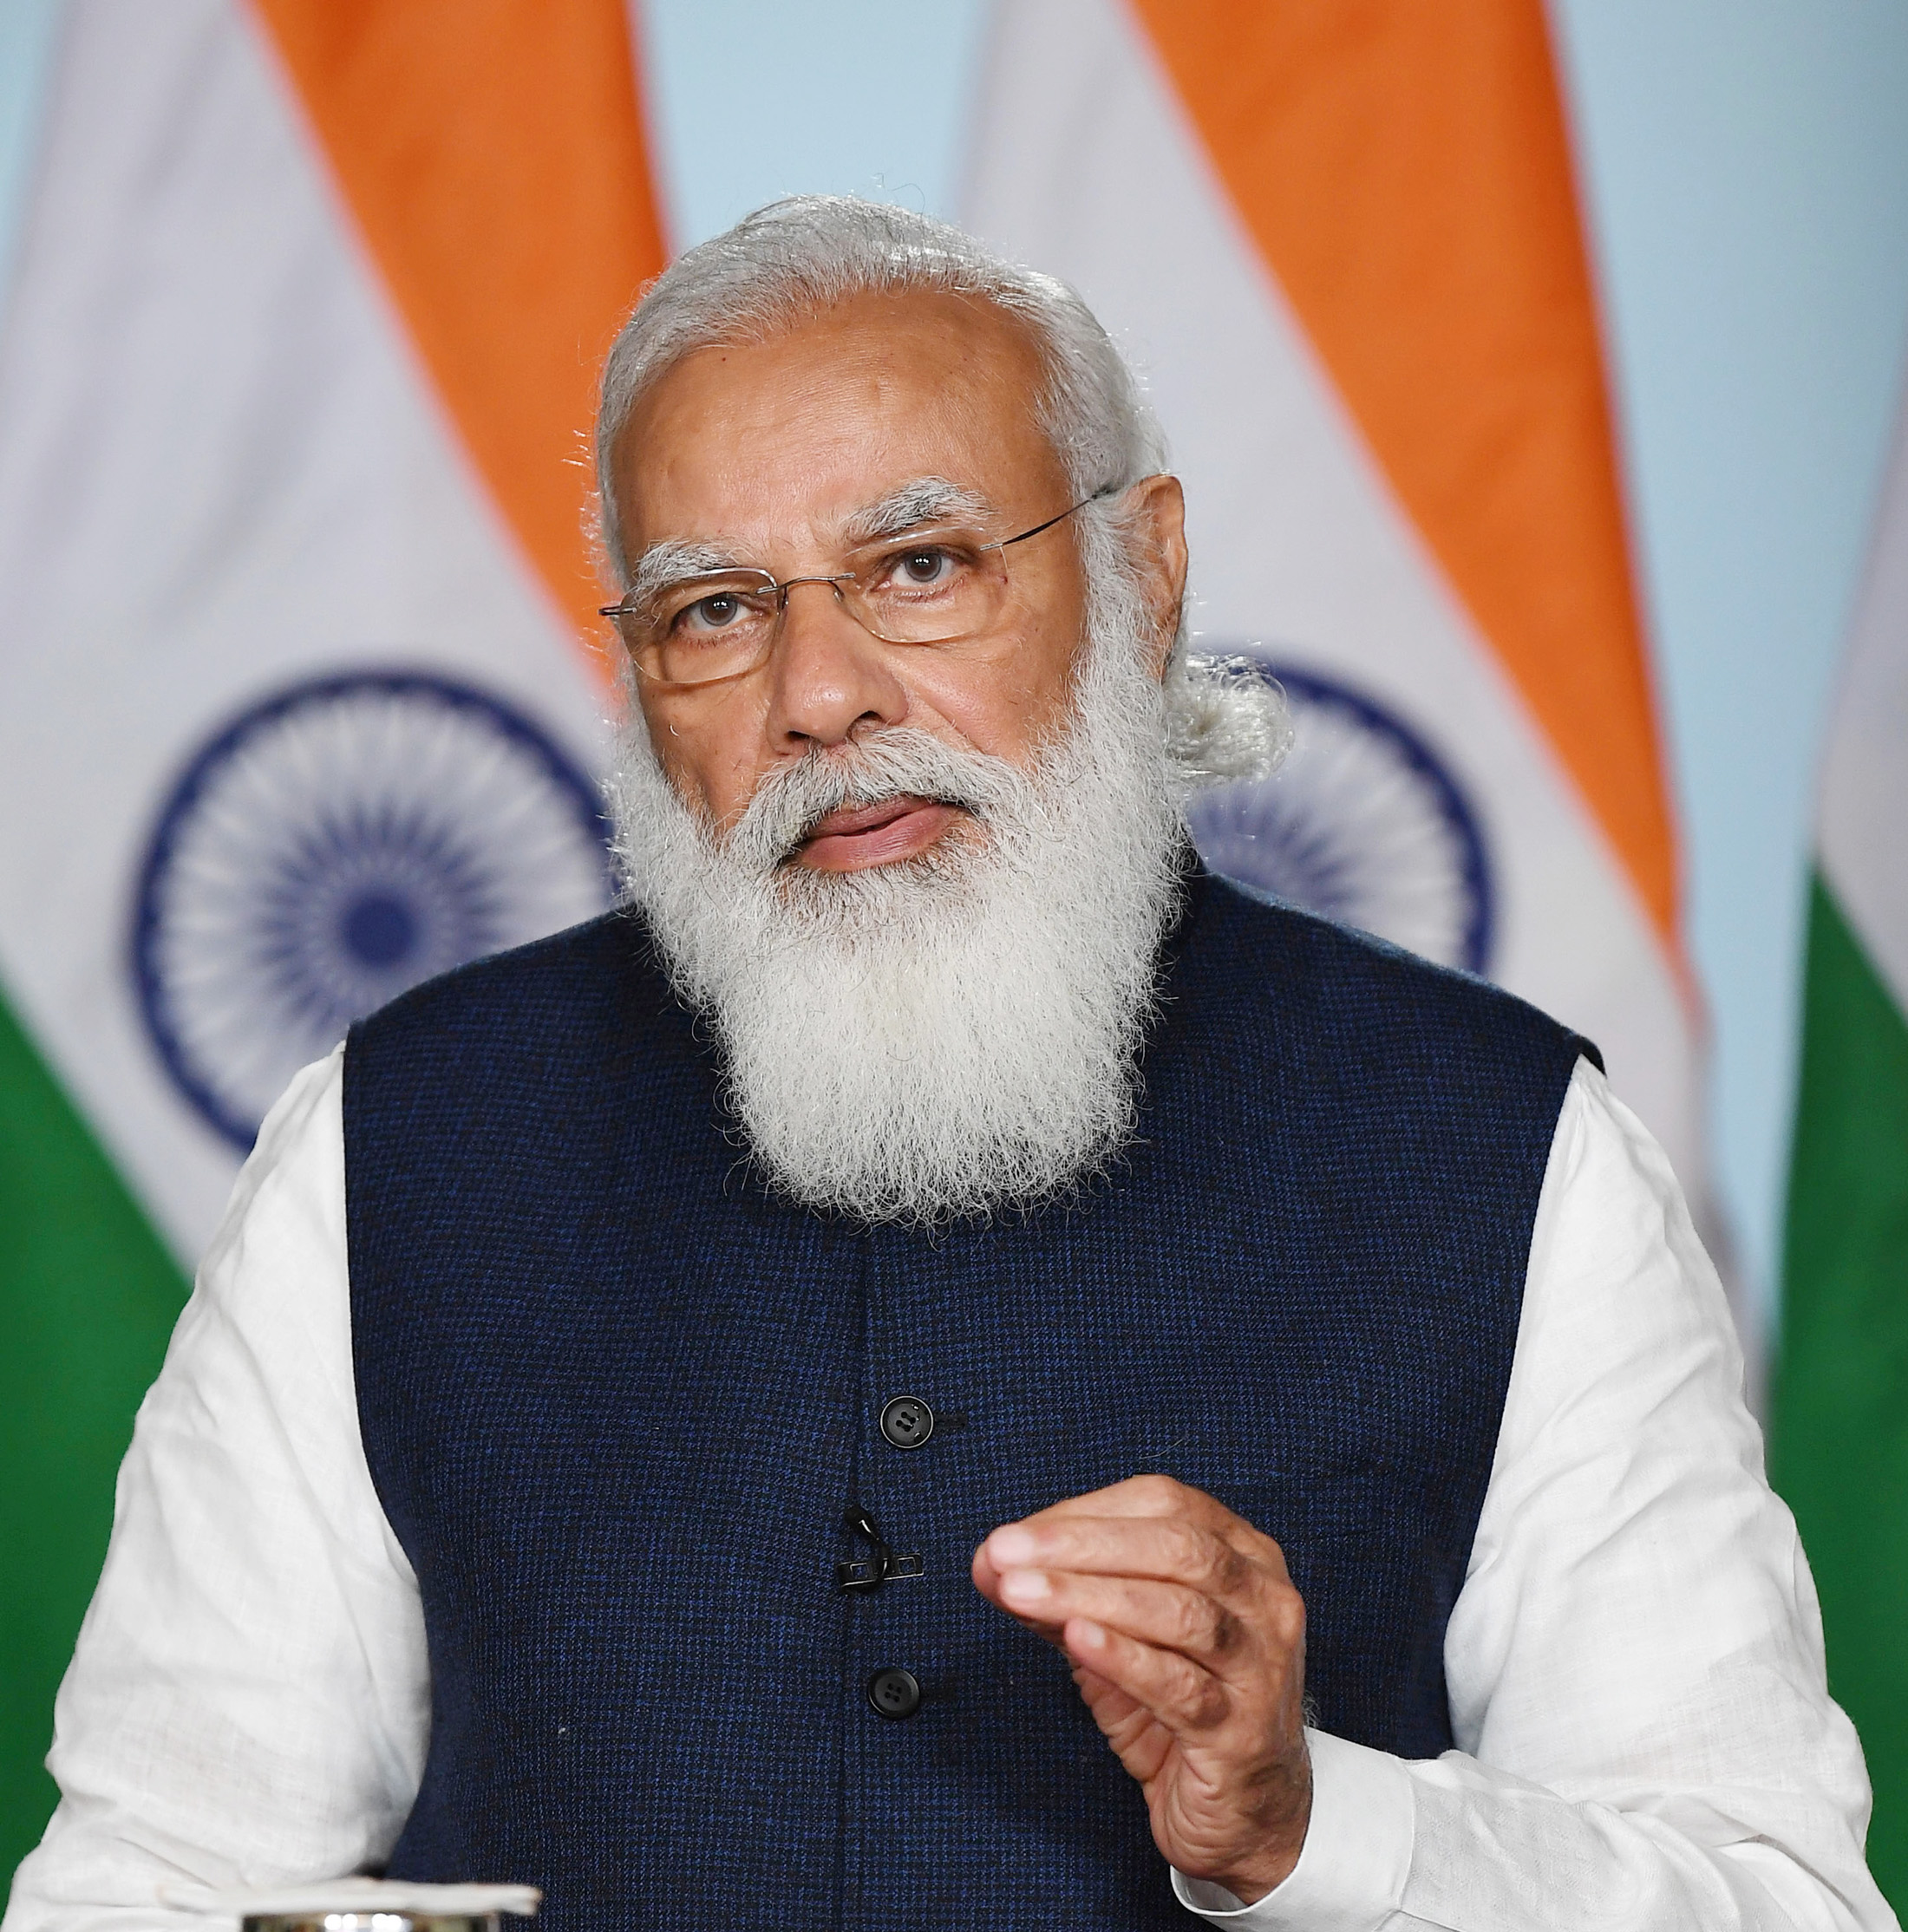 Portrett av statsminister Modi, bak ham står det indiske flagg, han har på seg skjorte og vest, og har et stort hvitt skjegg